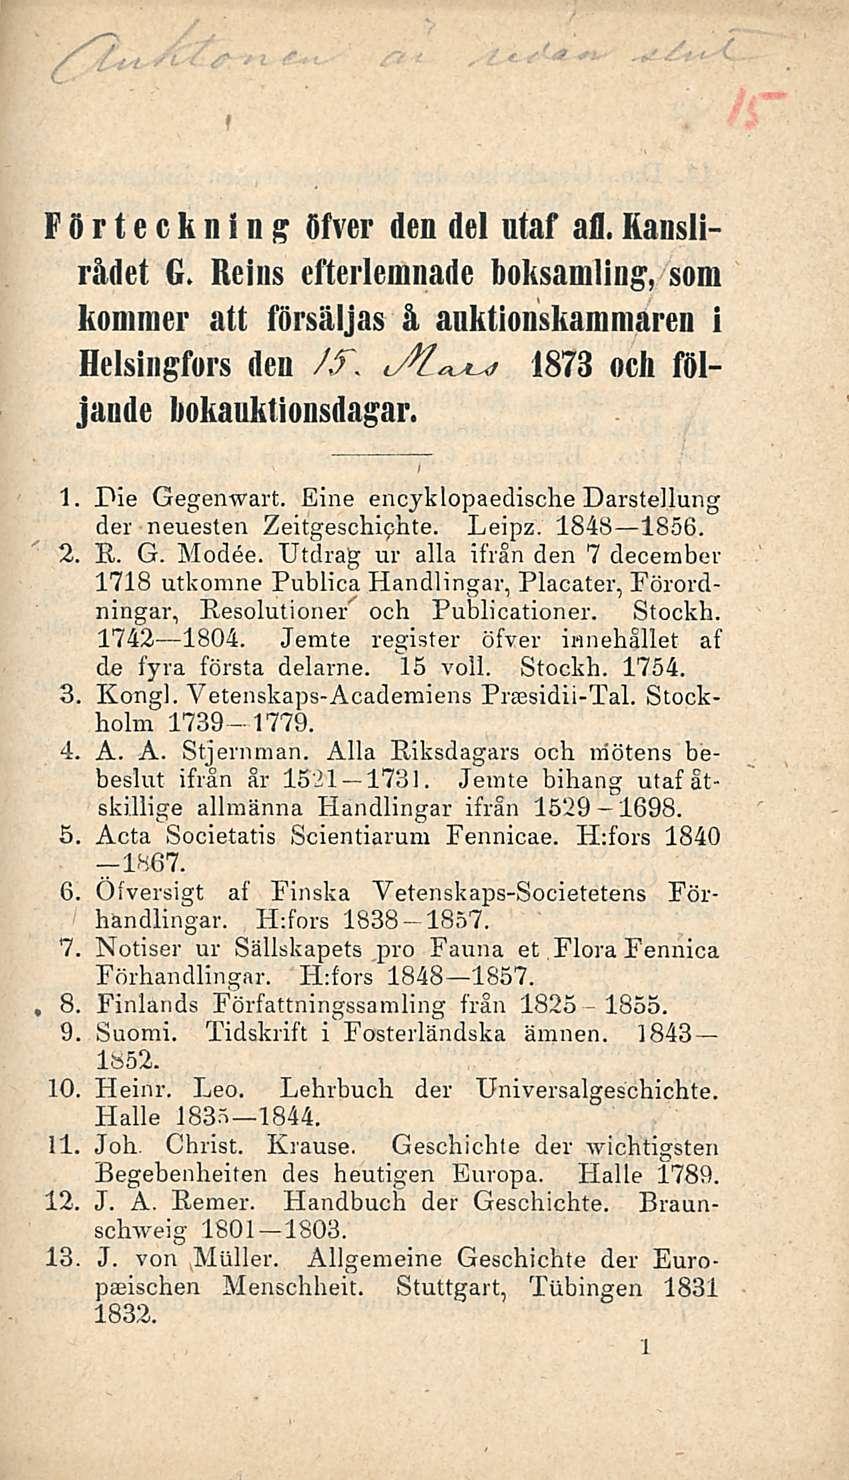 Förteckning öfver den del utaf ali.rauslirådet G. Reins efterlemnade boksaniling, som kommer att försäljas å auktionskammareii i Helsingfors den /f. i/t 1873 ocli följande bokauktionsdagar.